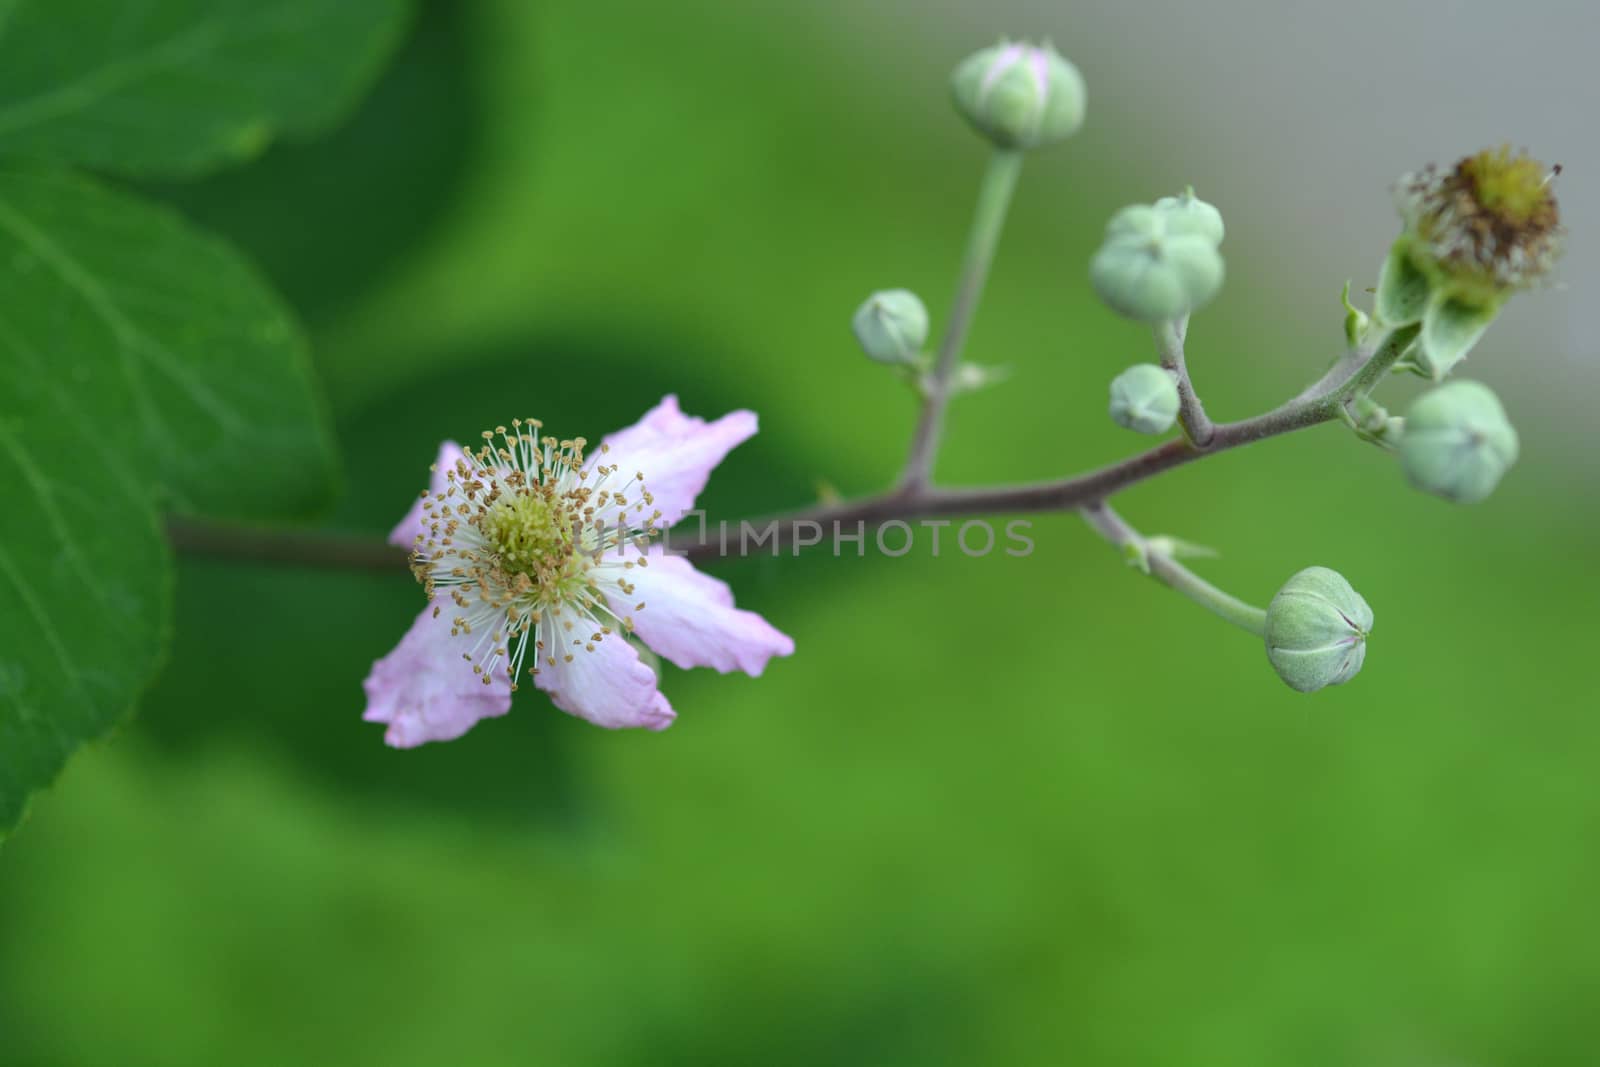 Flowering raspberry by nahhan